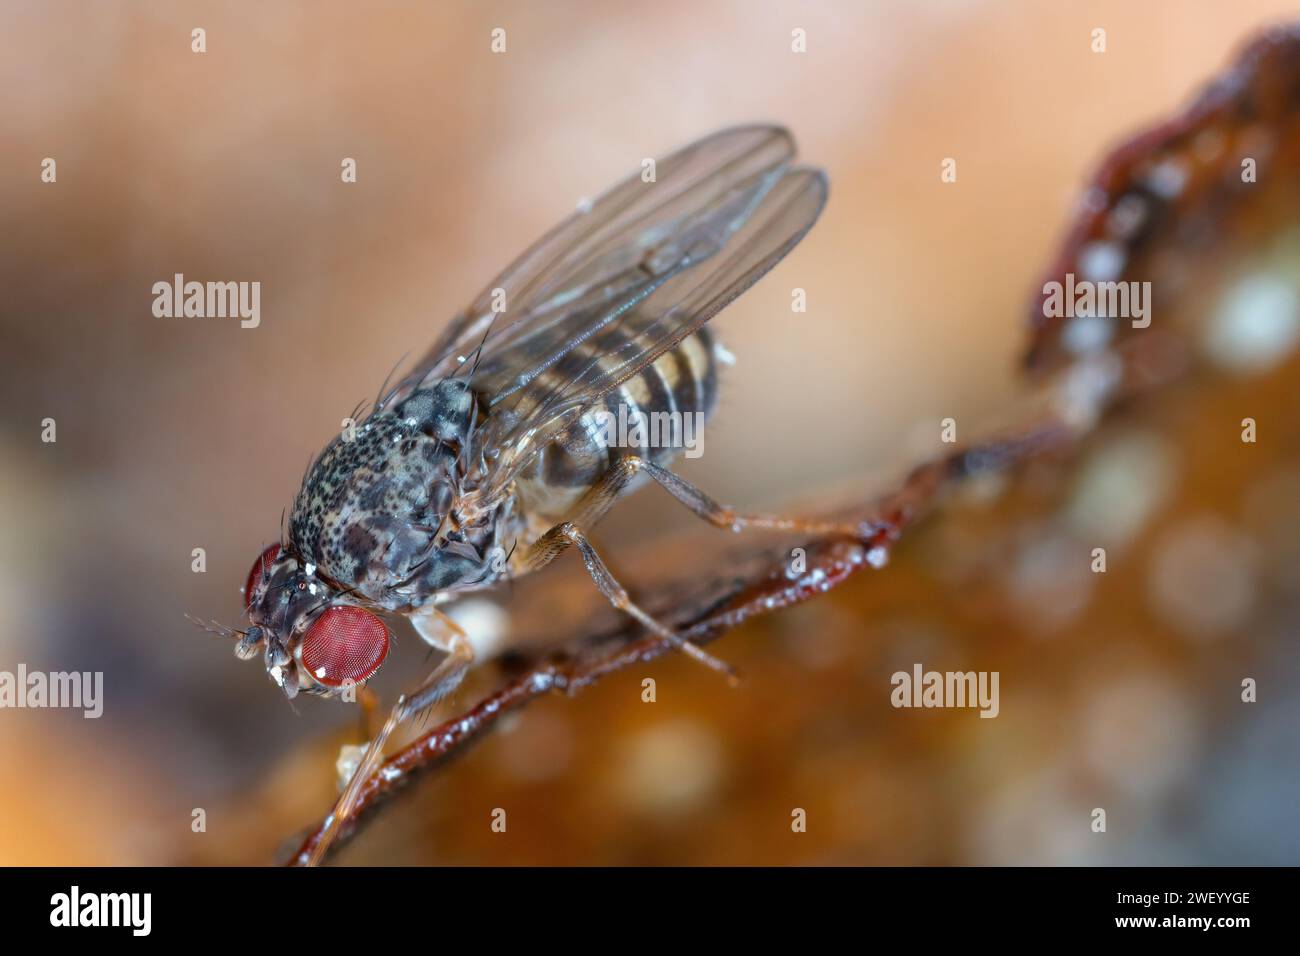 Mouche commune des fruits, Drosophila sp., sur les aliments pourris. Banque D'Images